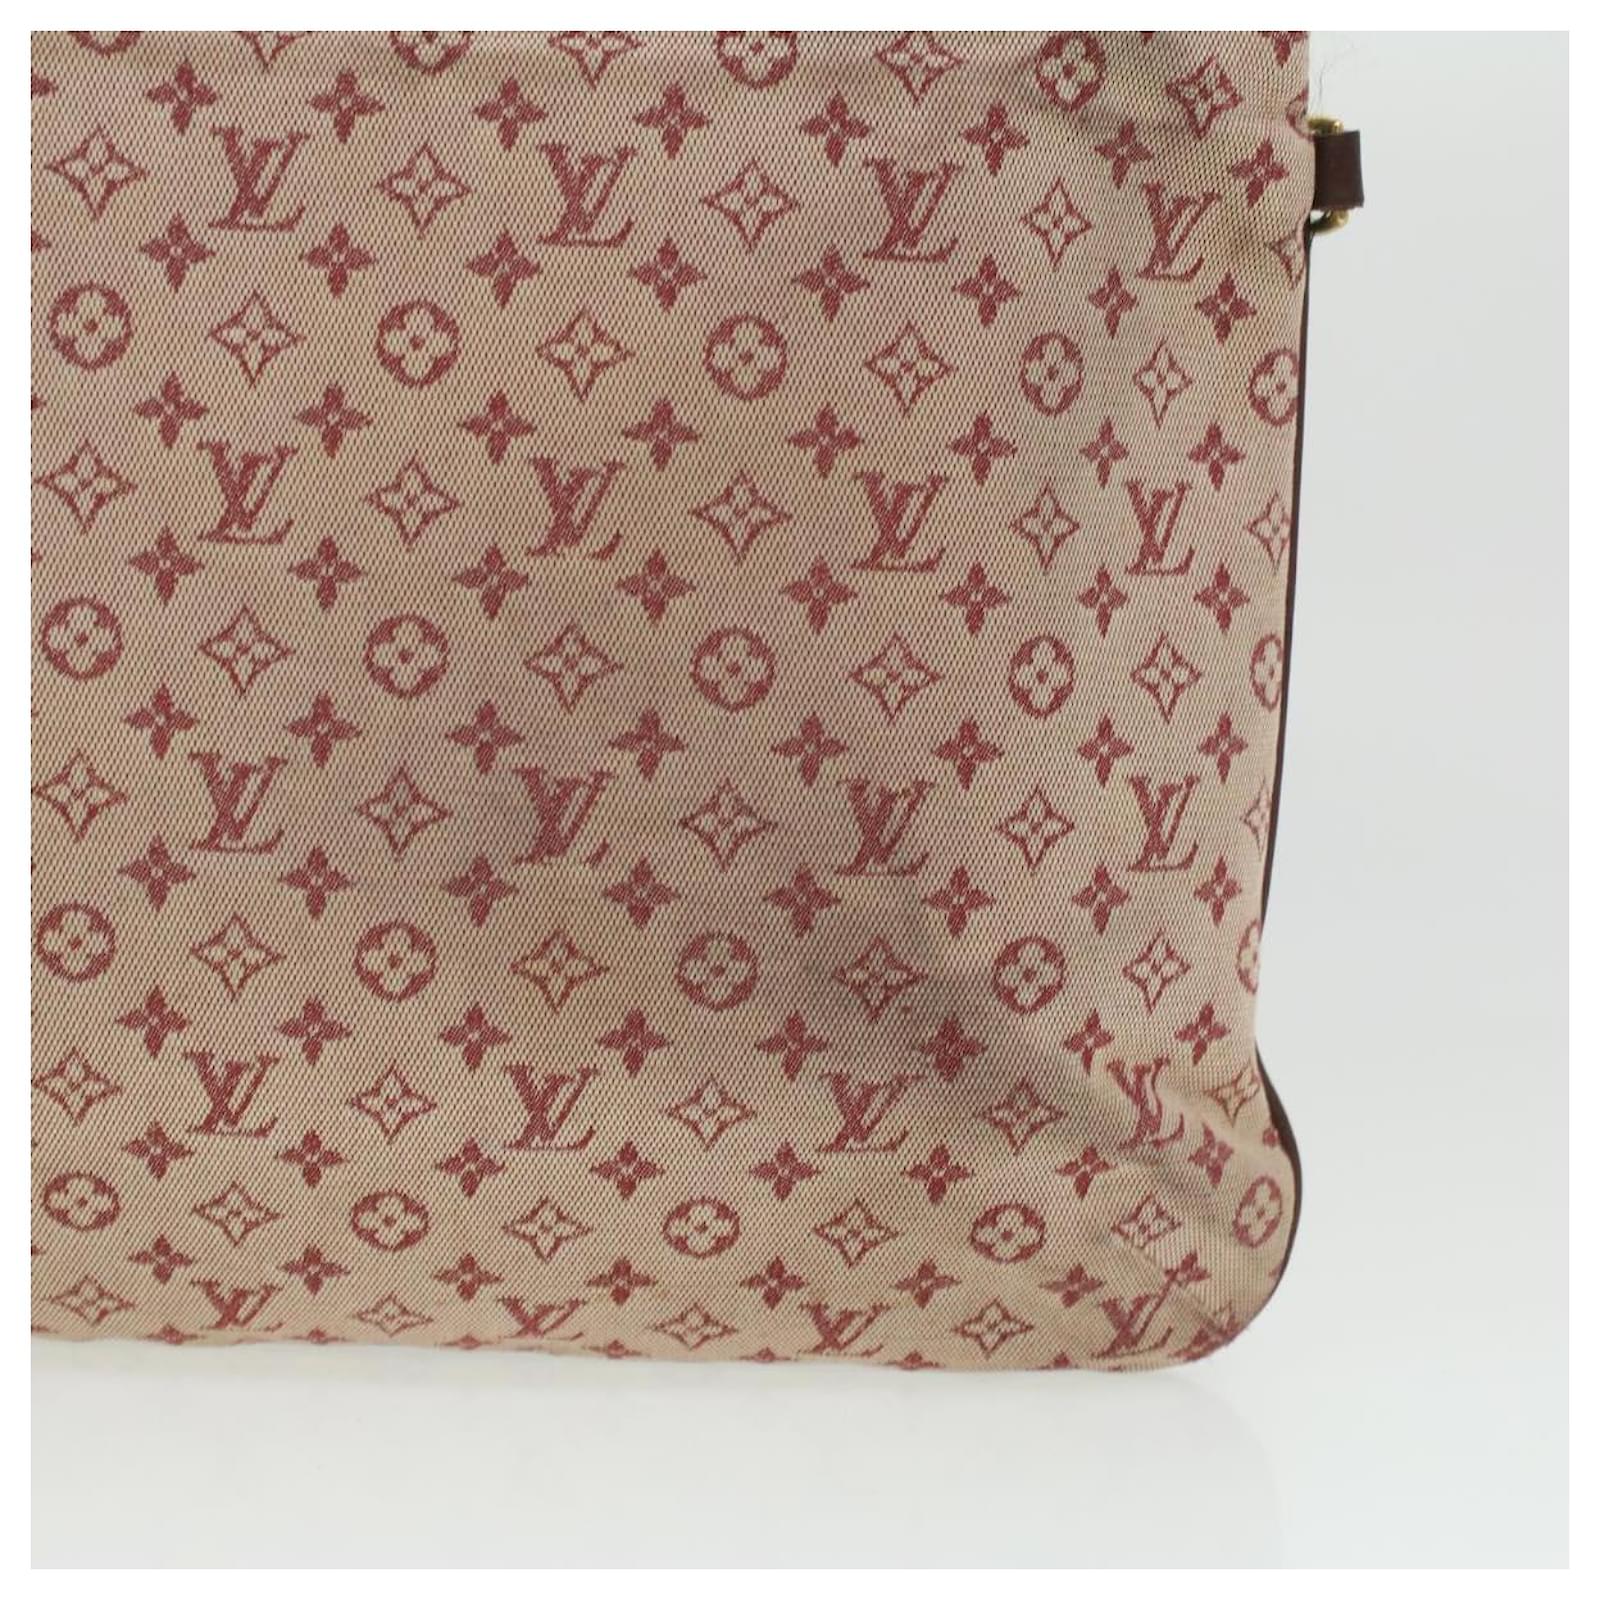 Authentic Louis Vuitton Monogram Mini Françoise Tote Bag 2 way bag